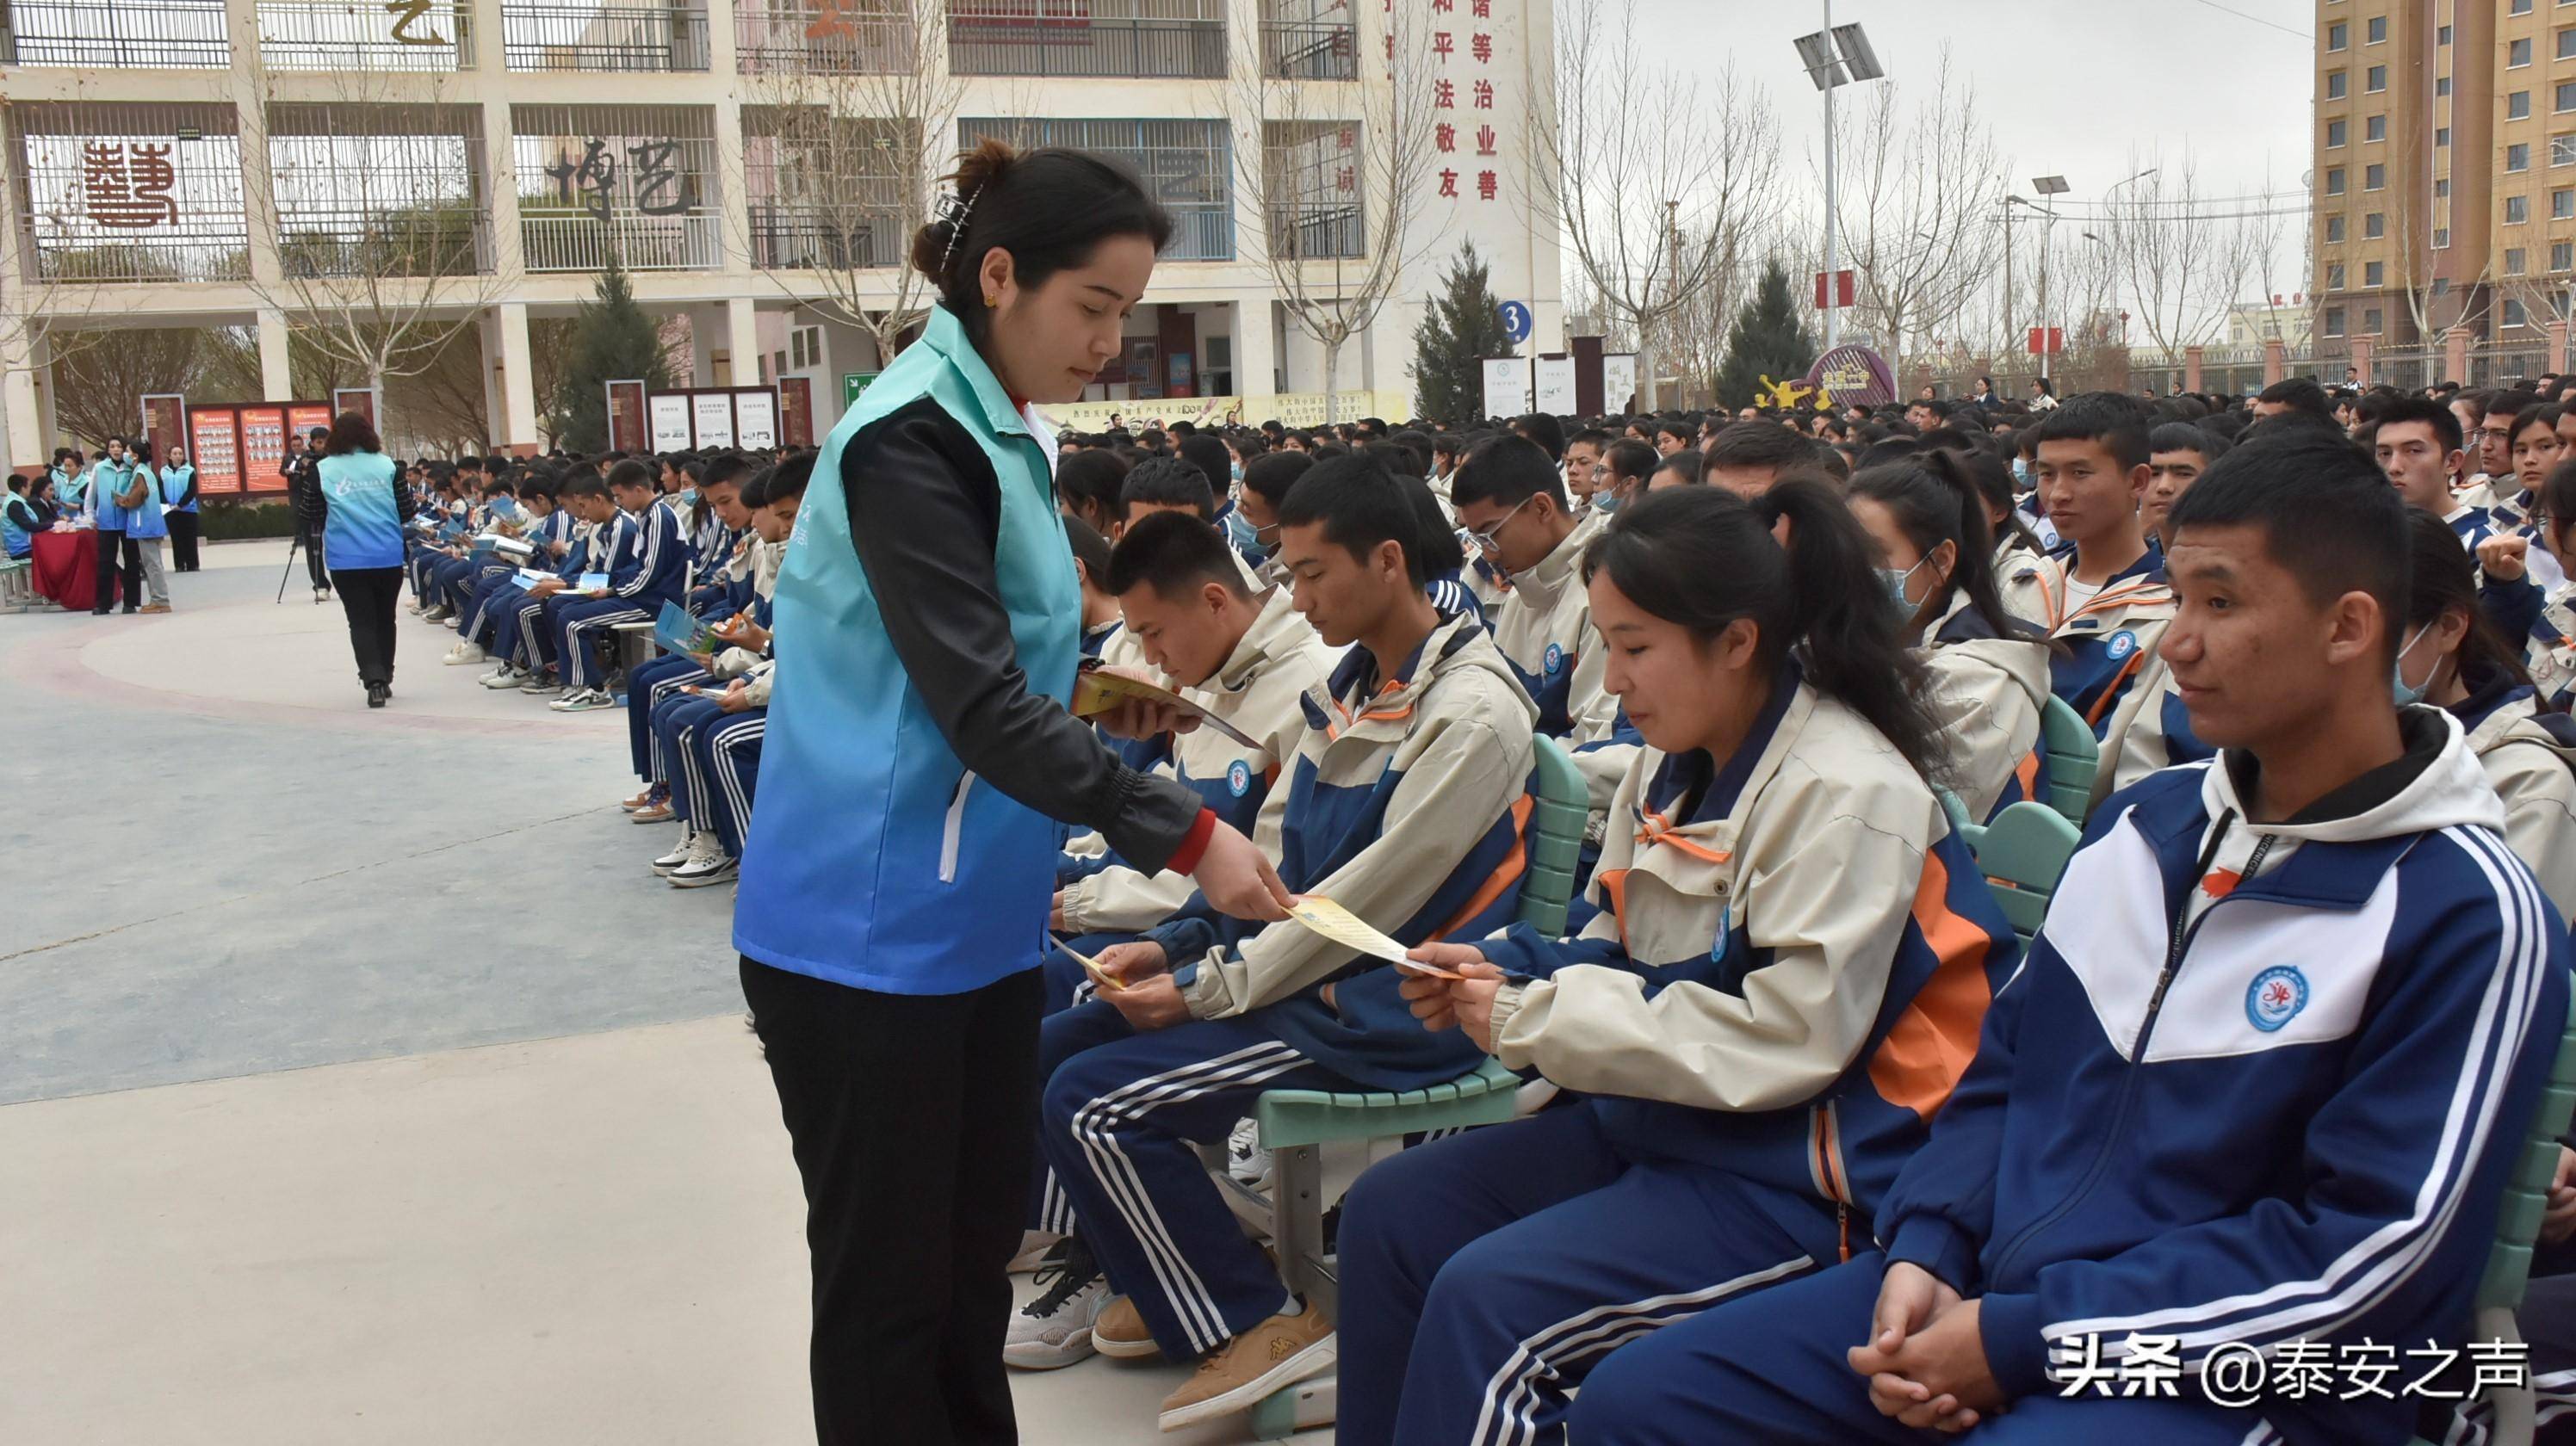 岳普湖县第一中学学生古丽孜巴·艾买提江说:今天医务人员详细介绍了